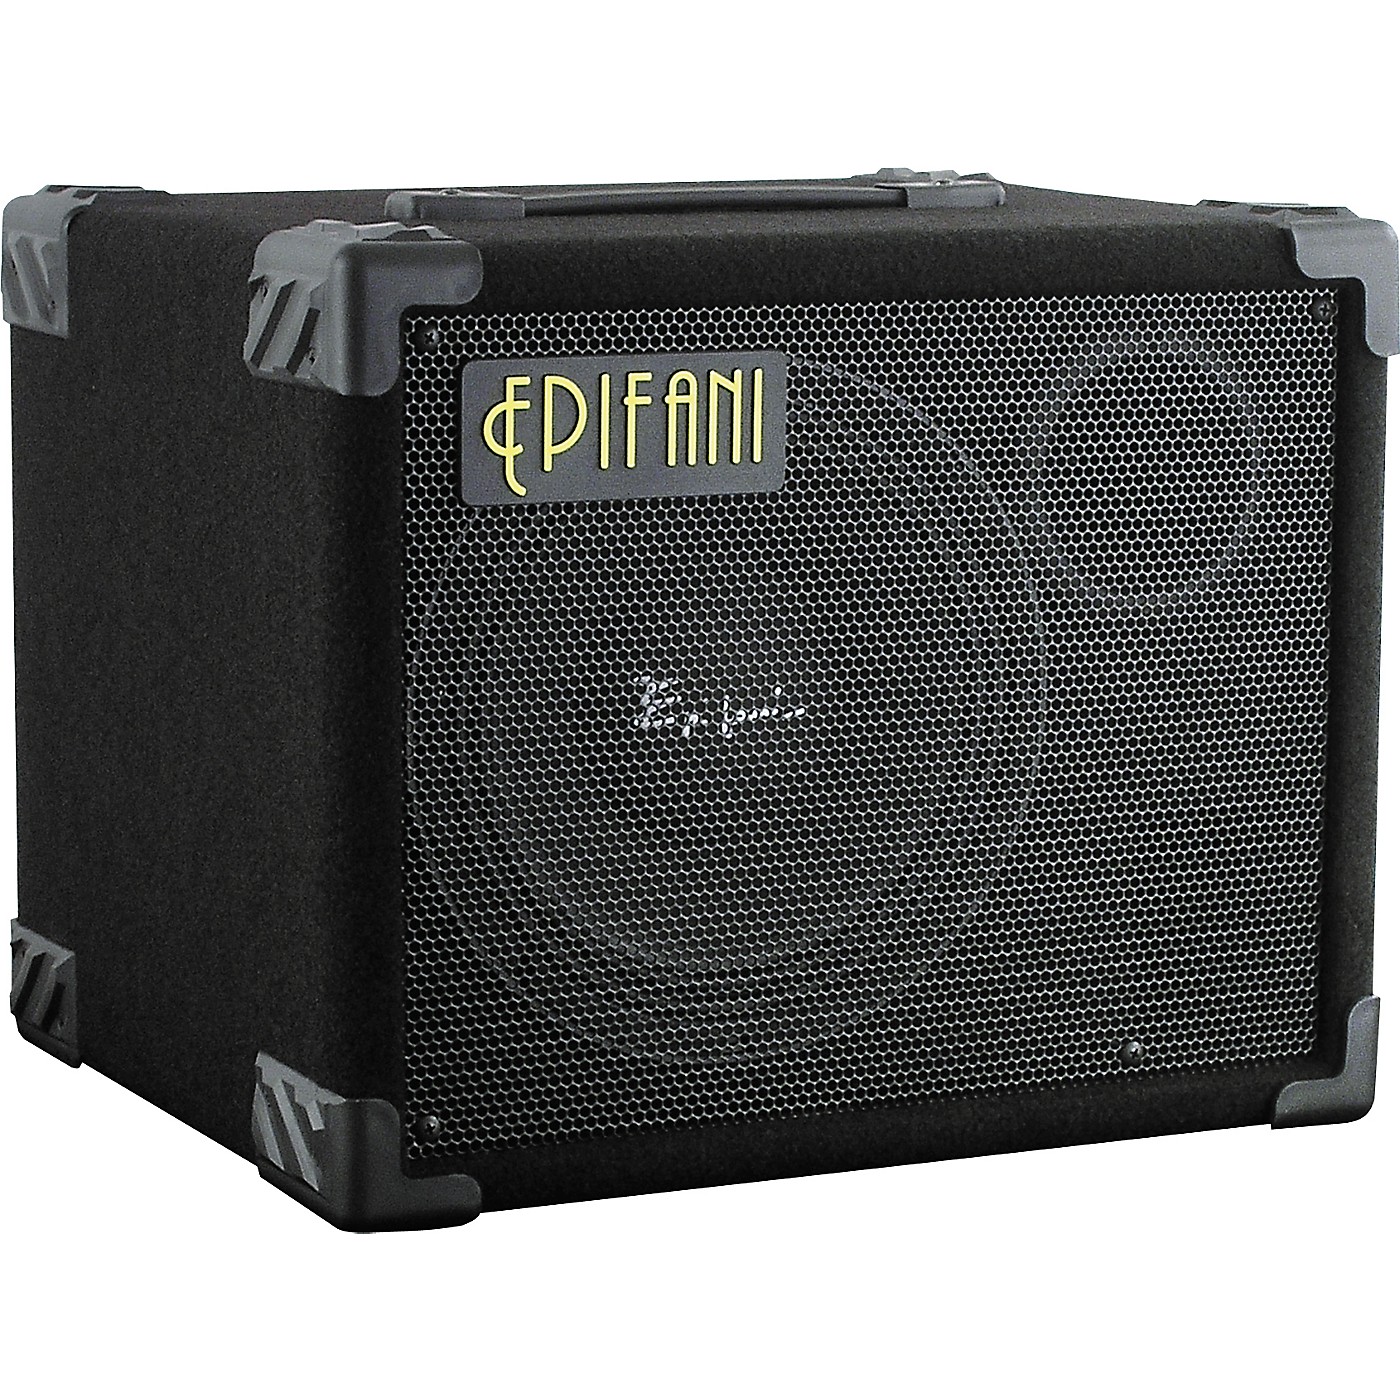 Epifani Ul2 110 250 Watt 1x10 Bass Cabinet Woodwind Brasswind